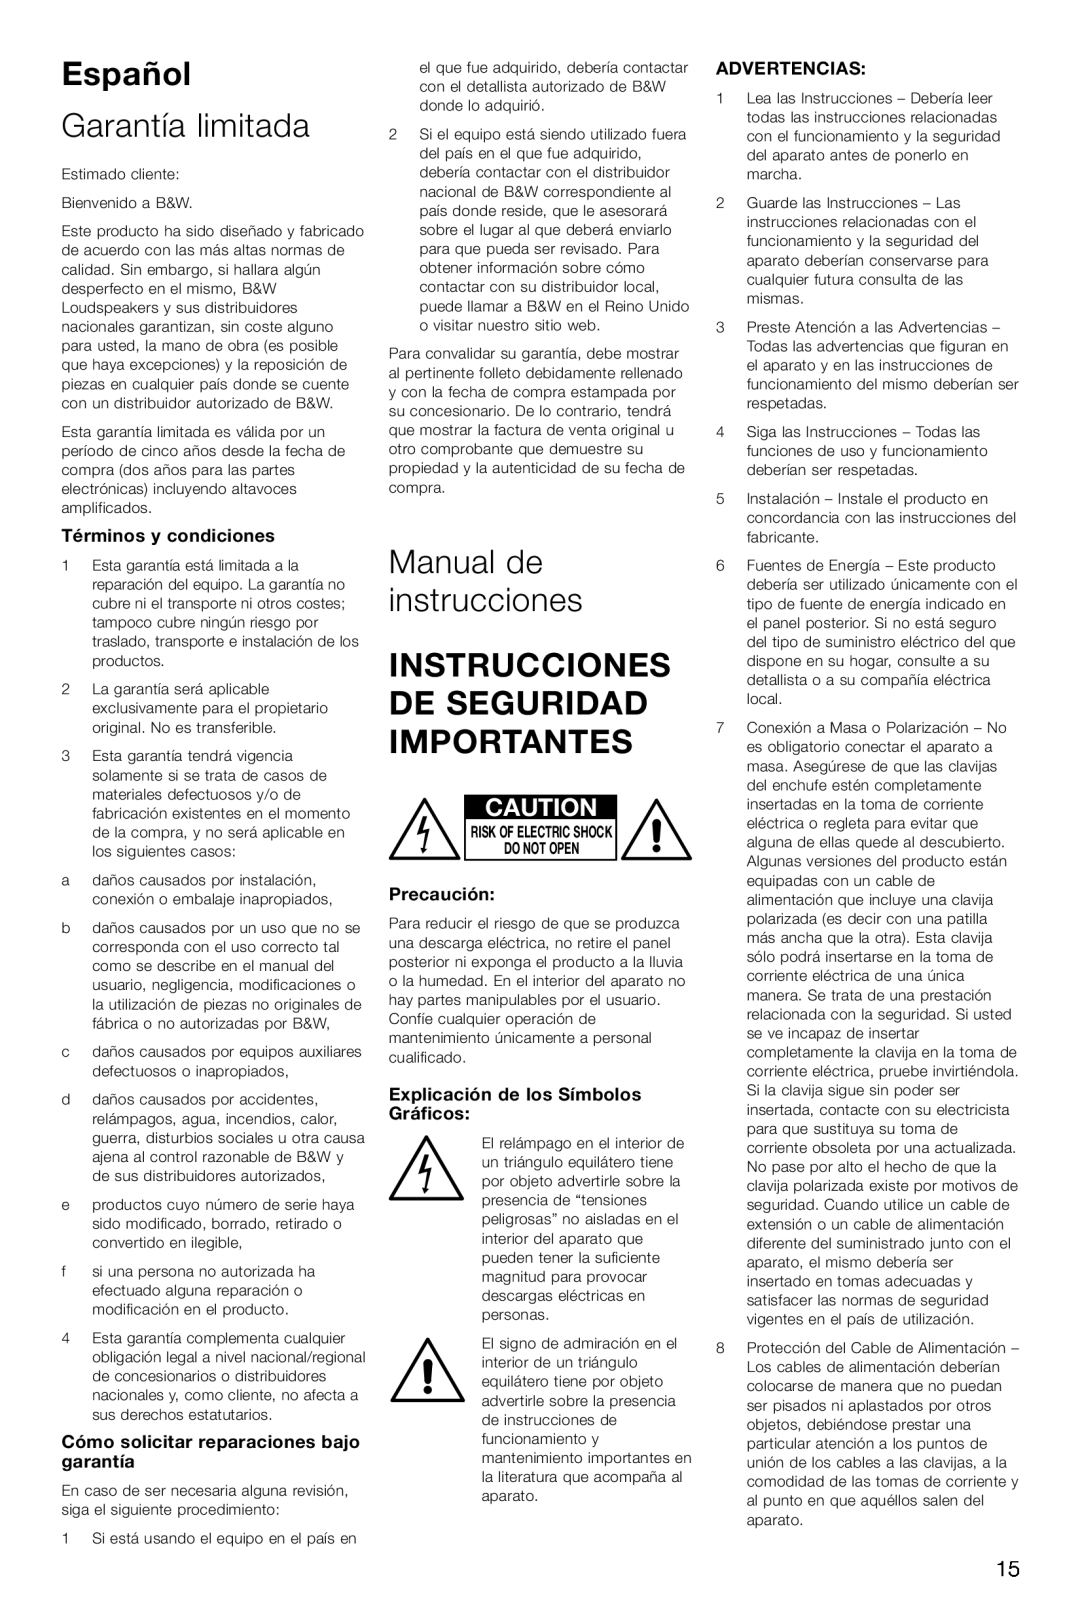 Bowers & Wilkins ASW CDM Español, Garantía limitada, Manual de instrucciones, Instrucciones De Seguridad Importantes 